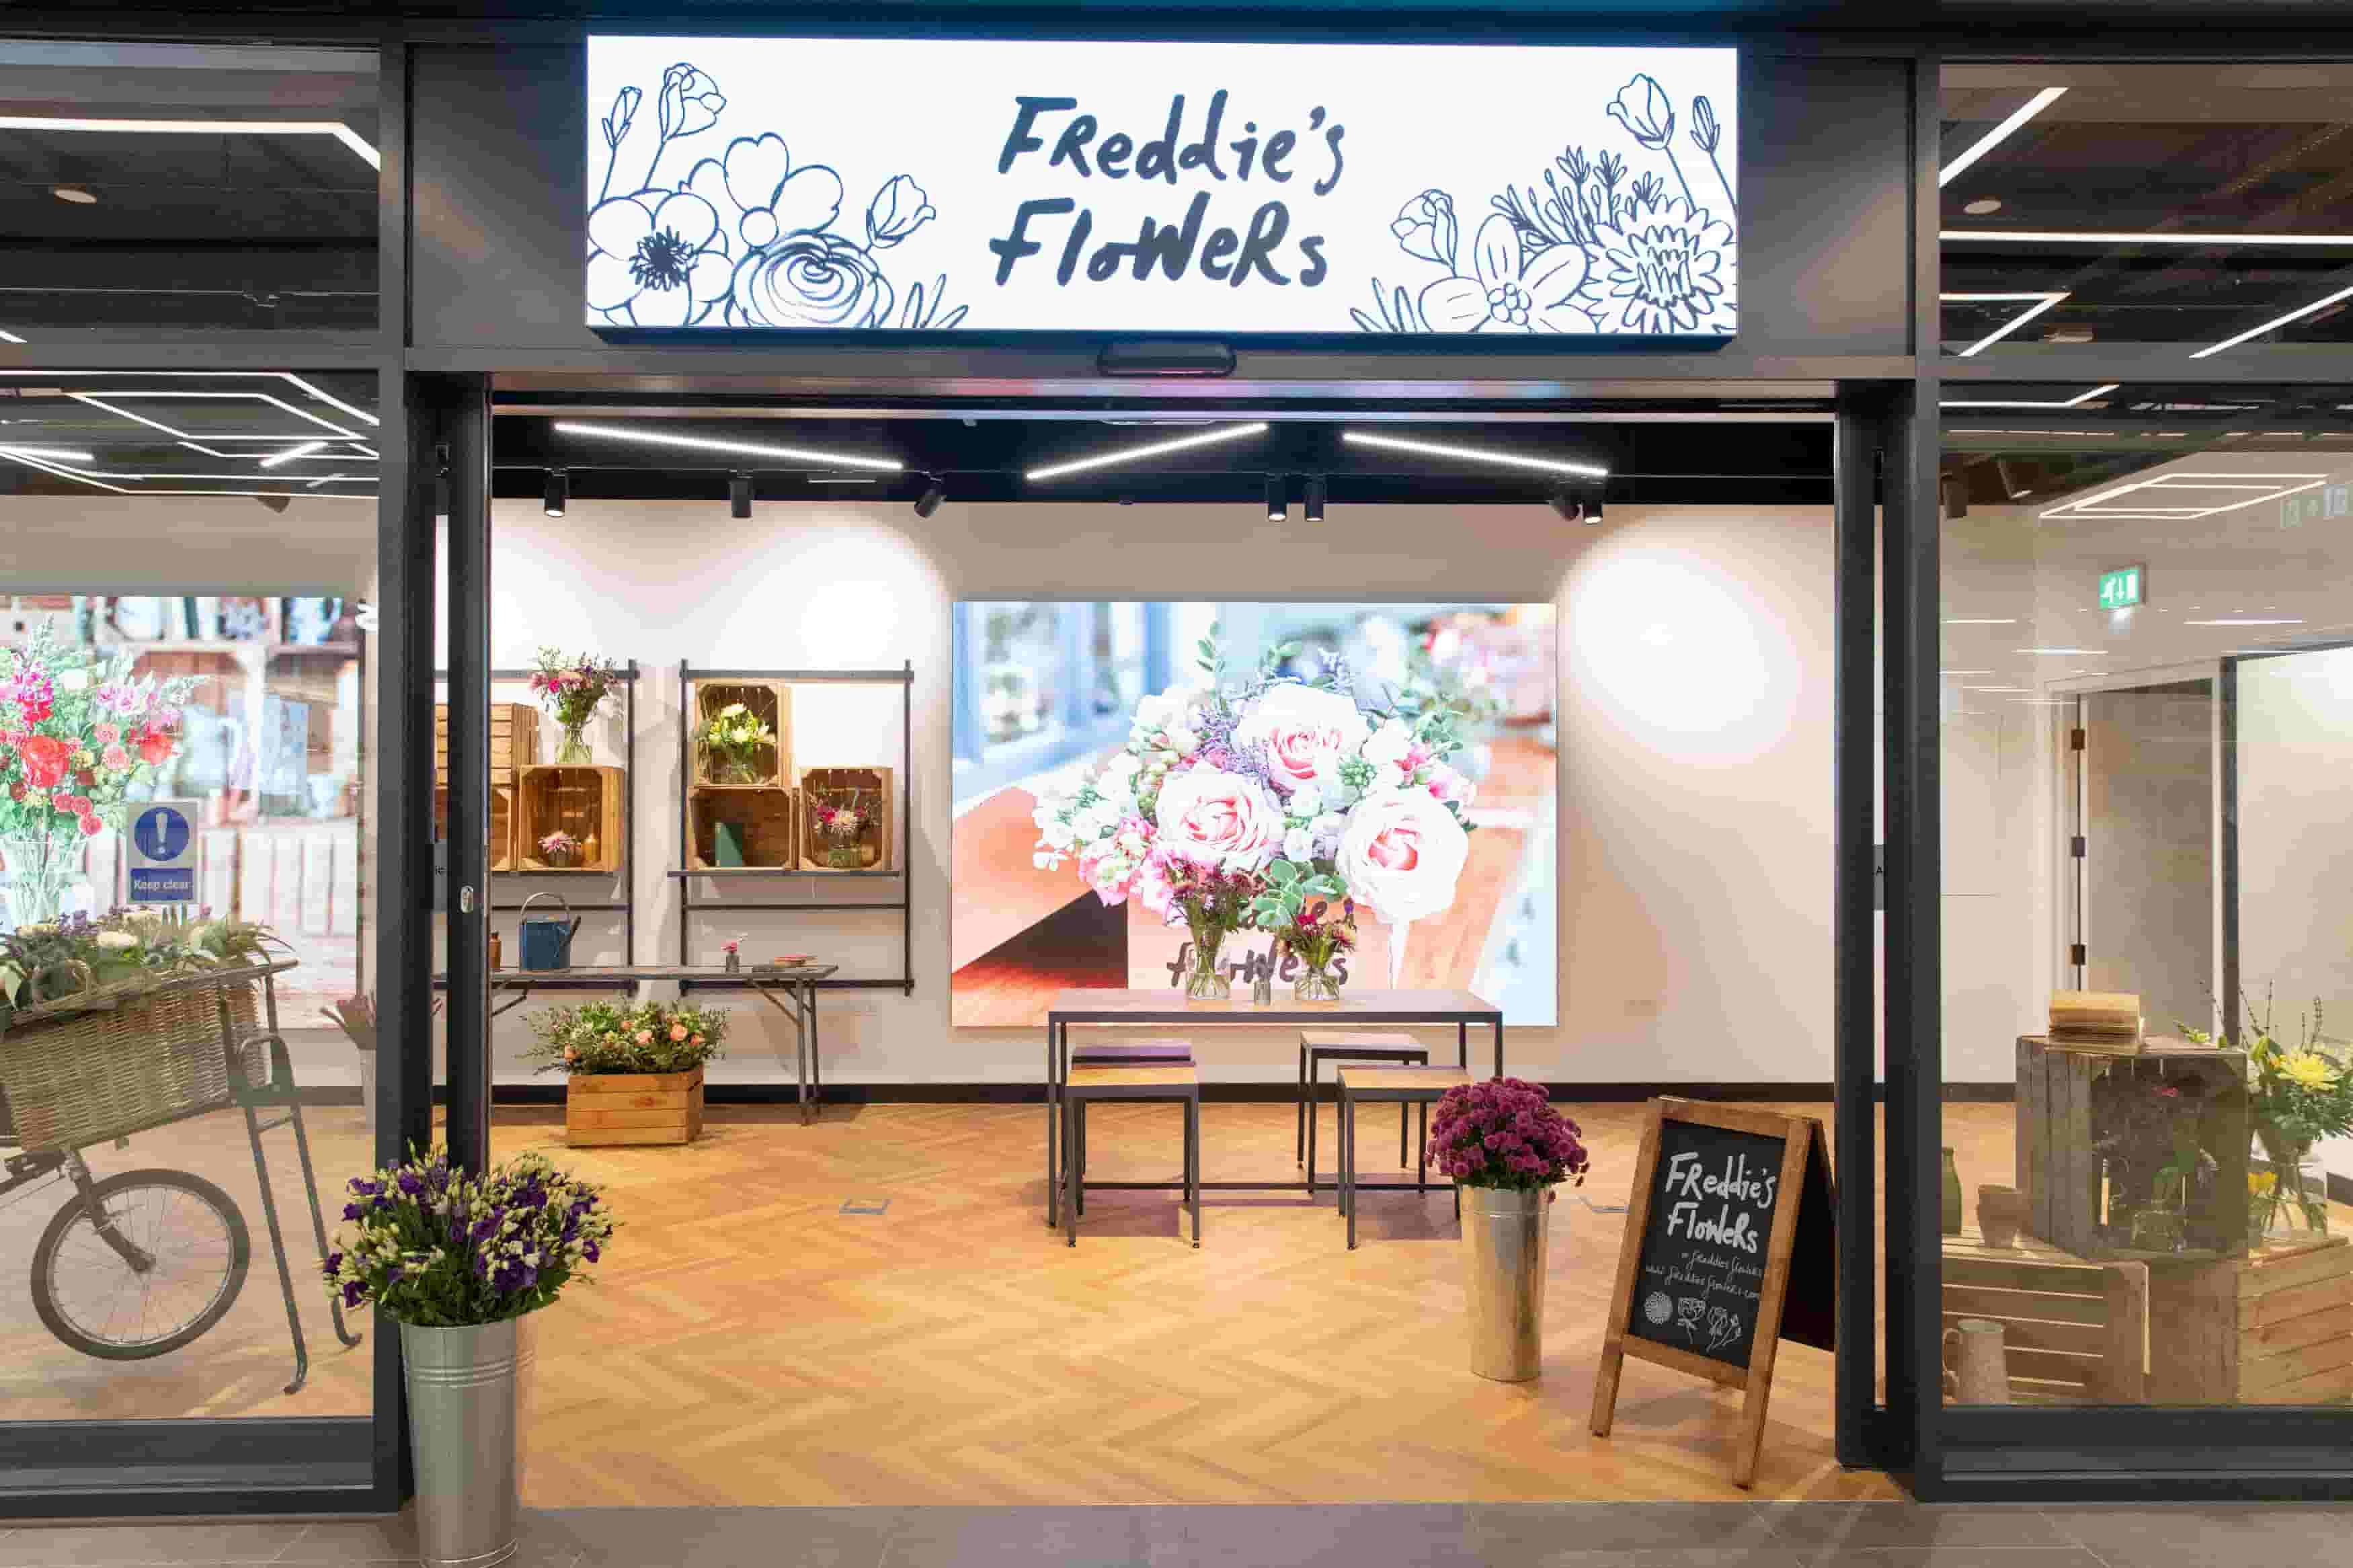 Freddie's flowers in Sook Hammersmith